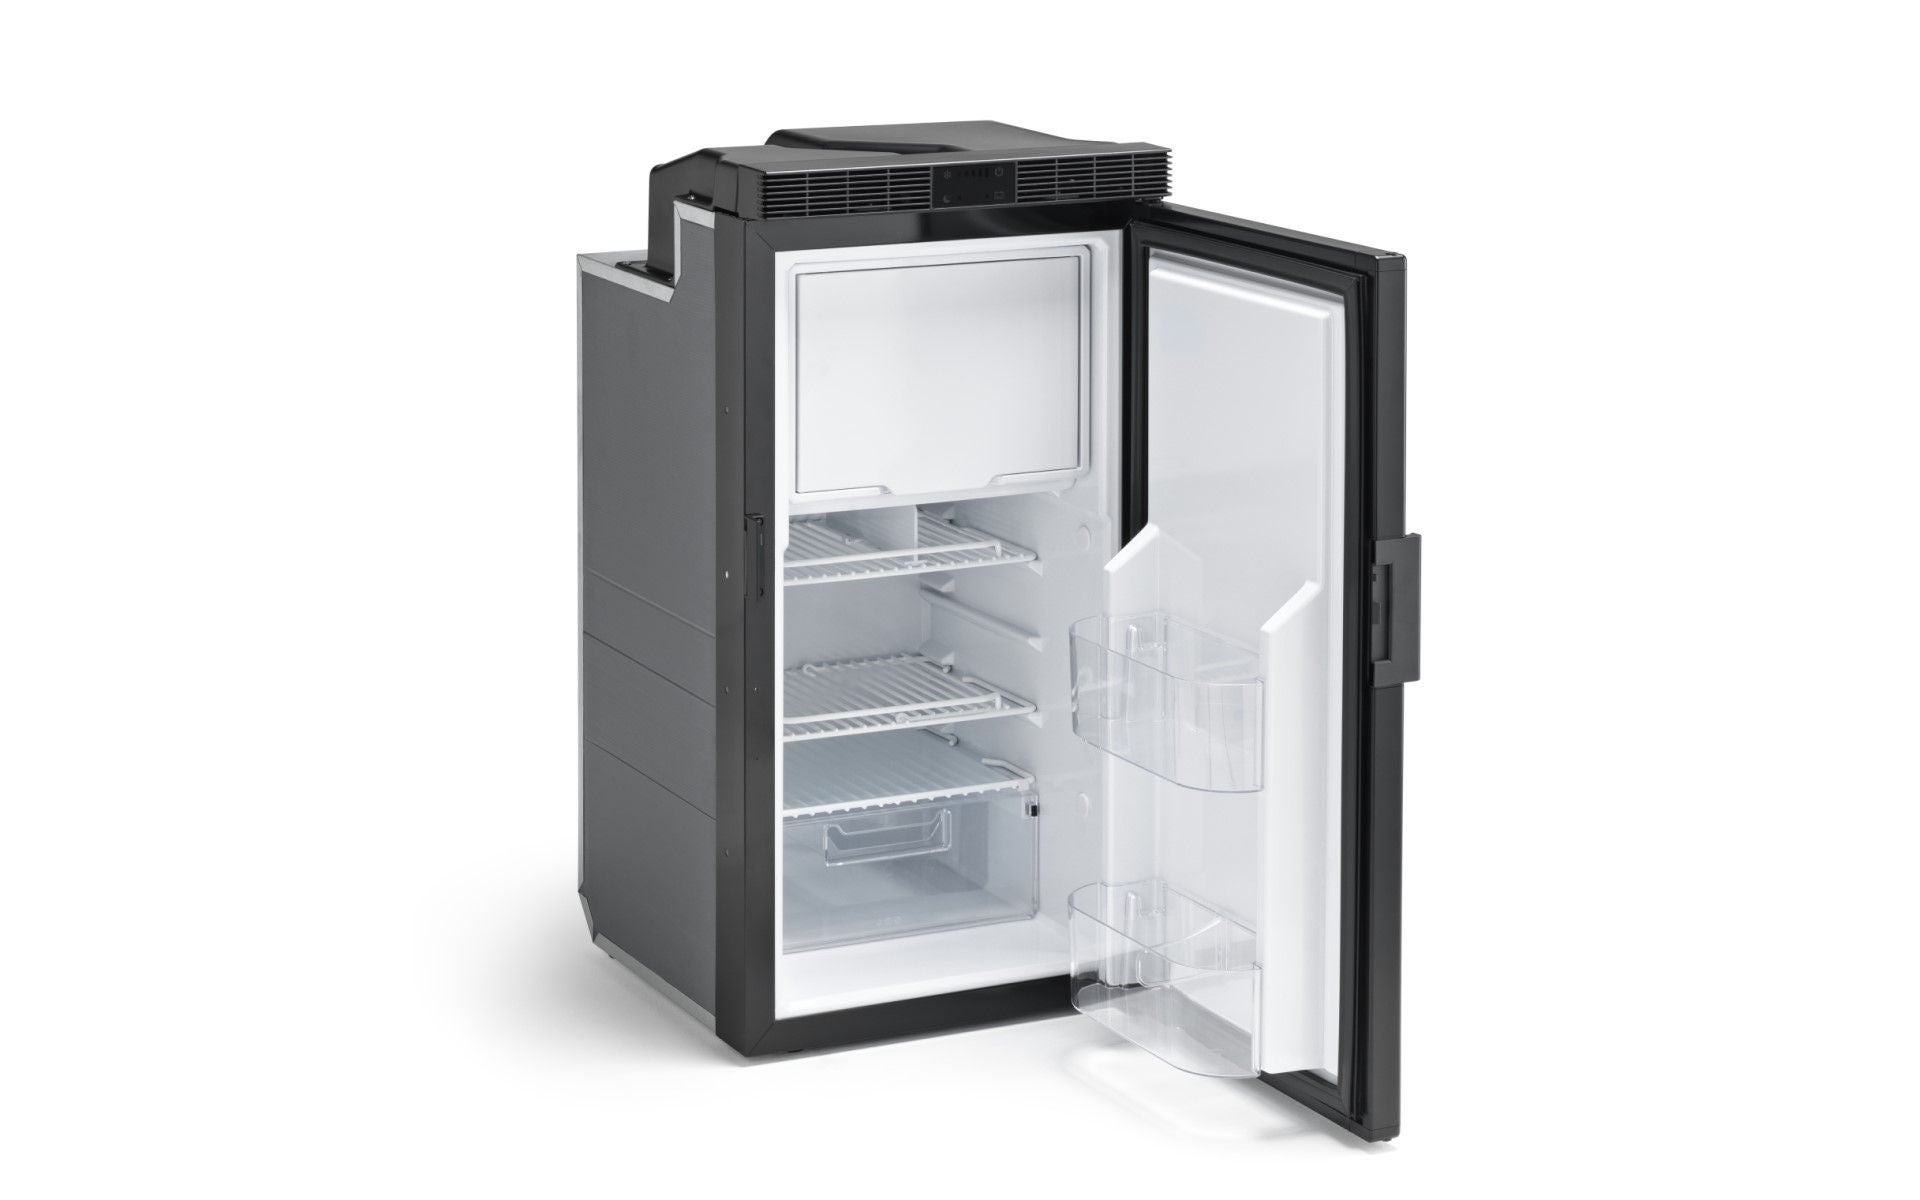 Product picture of Freeline Slim 70 fridge with open door